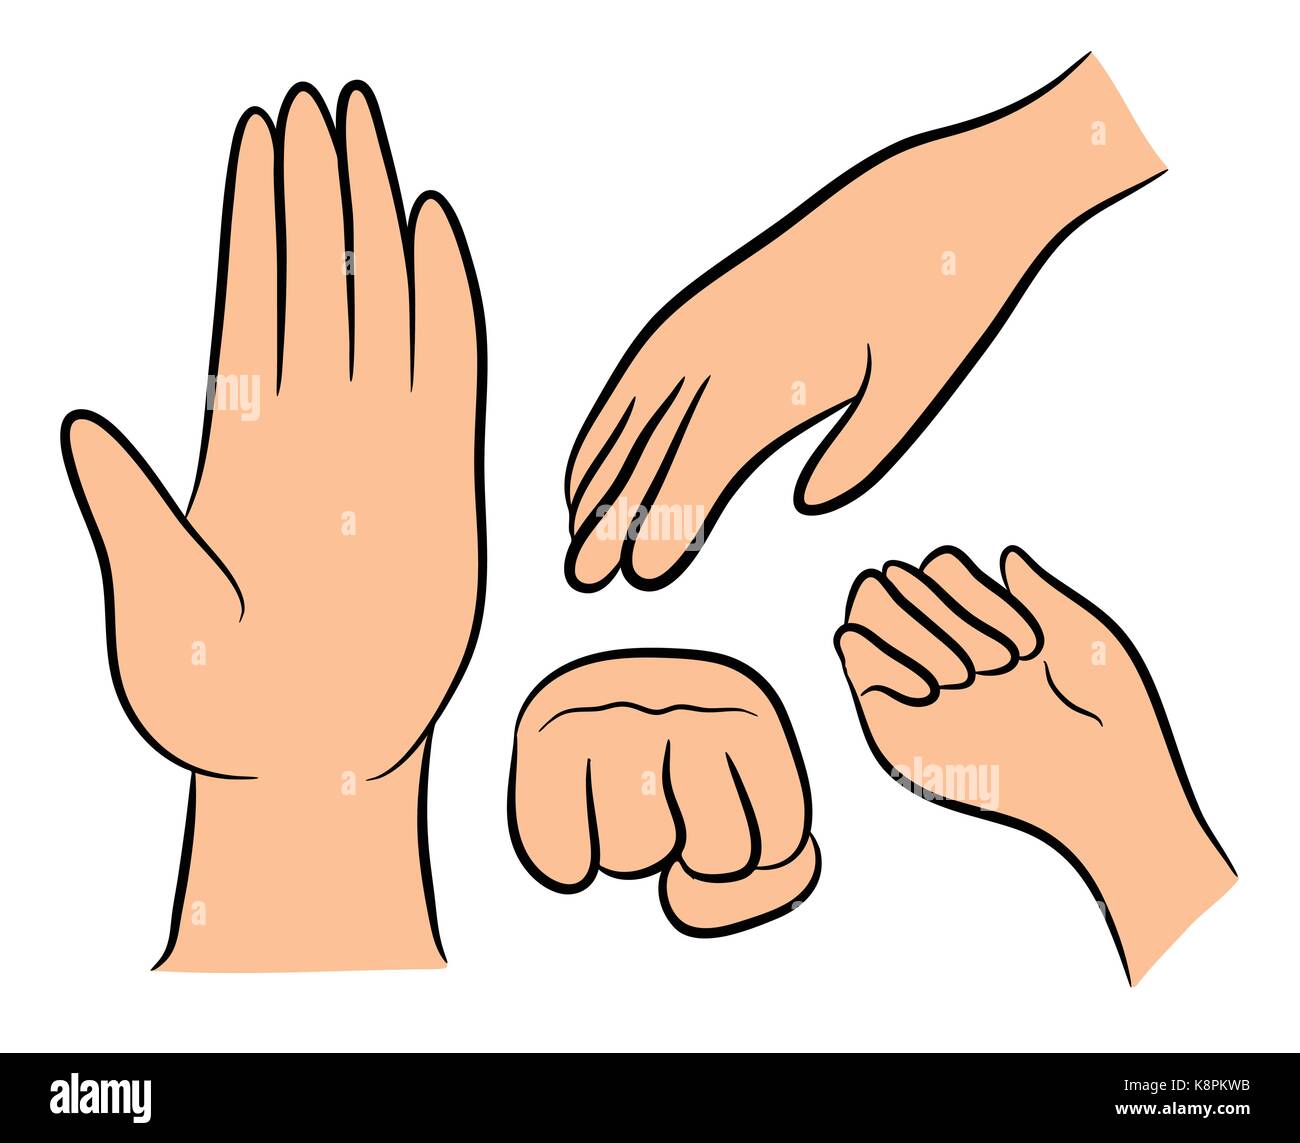 Image de caricature la main de l'ensemble de gestes. Vector illustration isolé sur fond blanc. Illustration de Vecteur